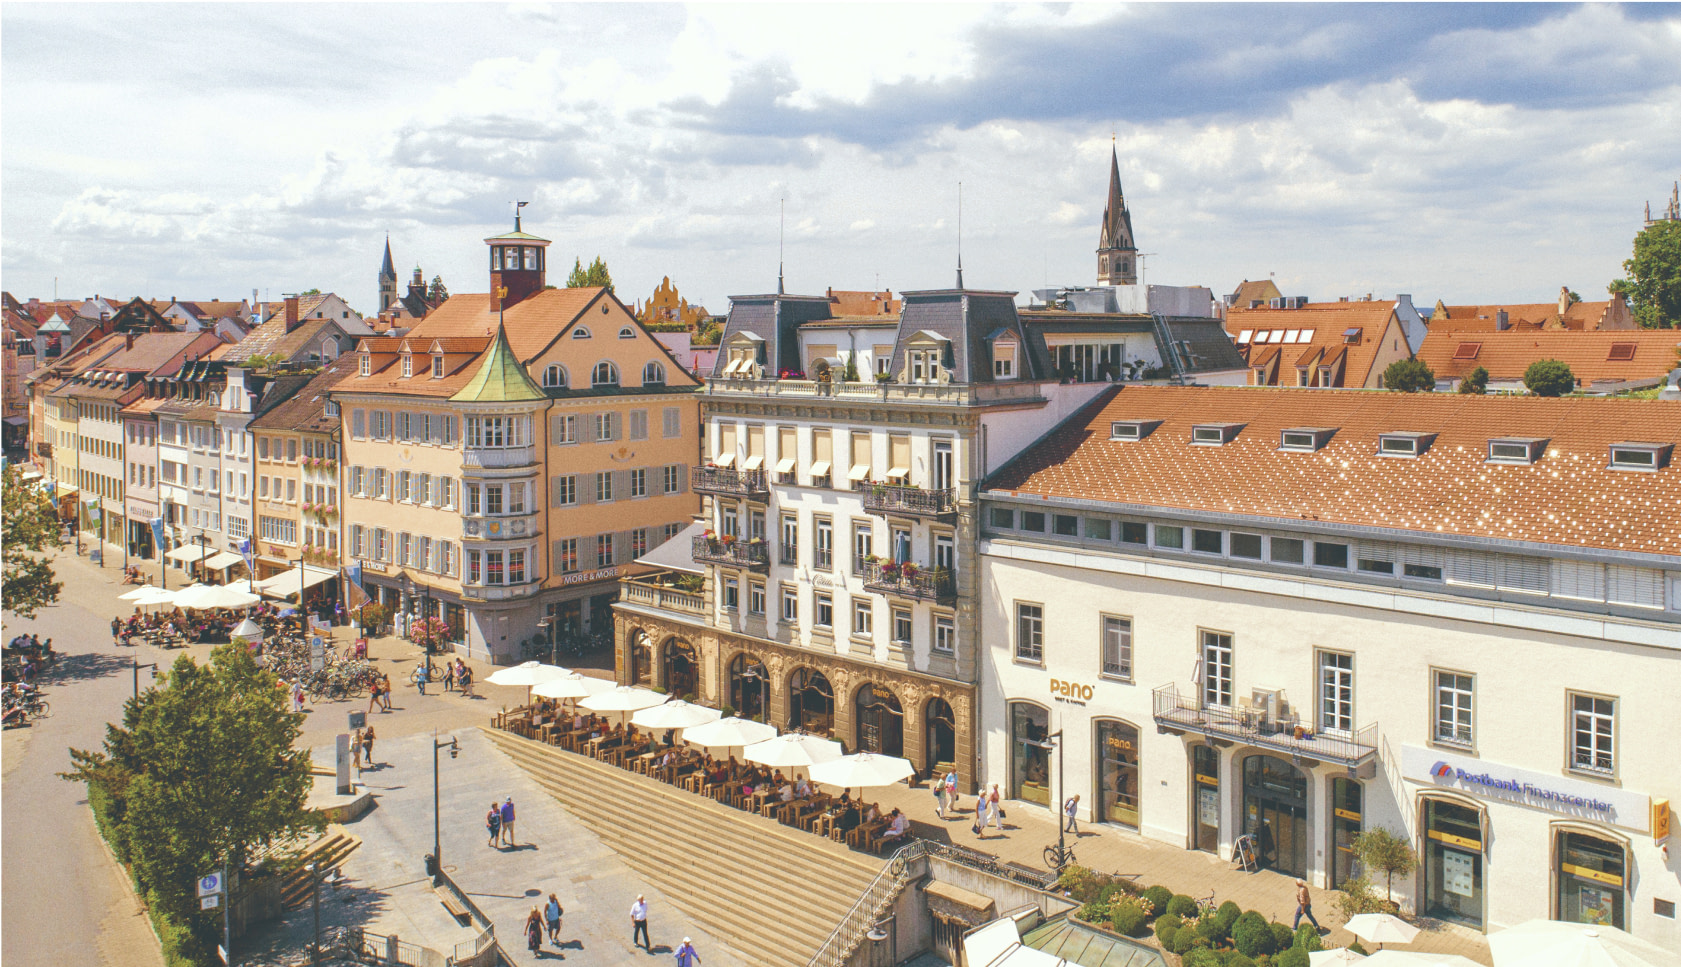 Die Marktstätte lädt zum Ende eines Rundgangs durch die Altstadt von Konstanz zum Rasten ein